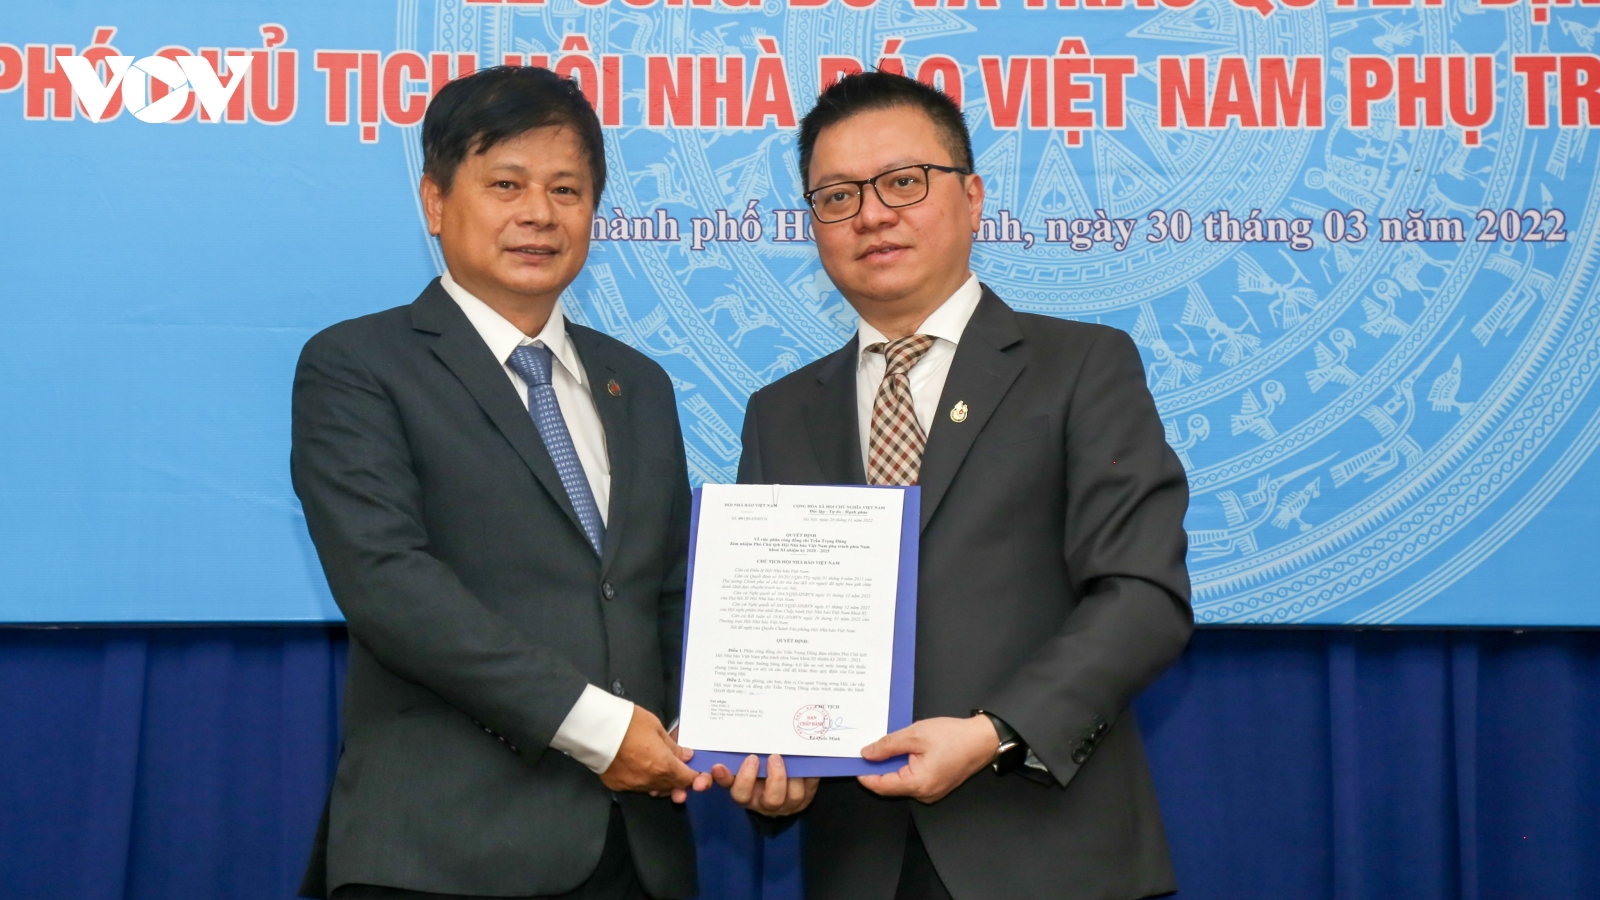 Ông Trần Trọng Dũng giữ cương vị Phó Chủ tịch Hội Nhà báo Việt Nam phụ trách phía Nam